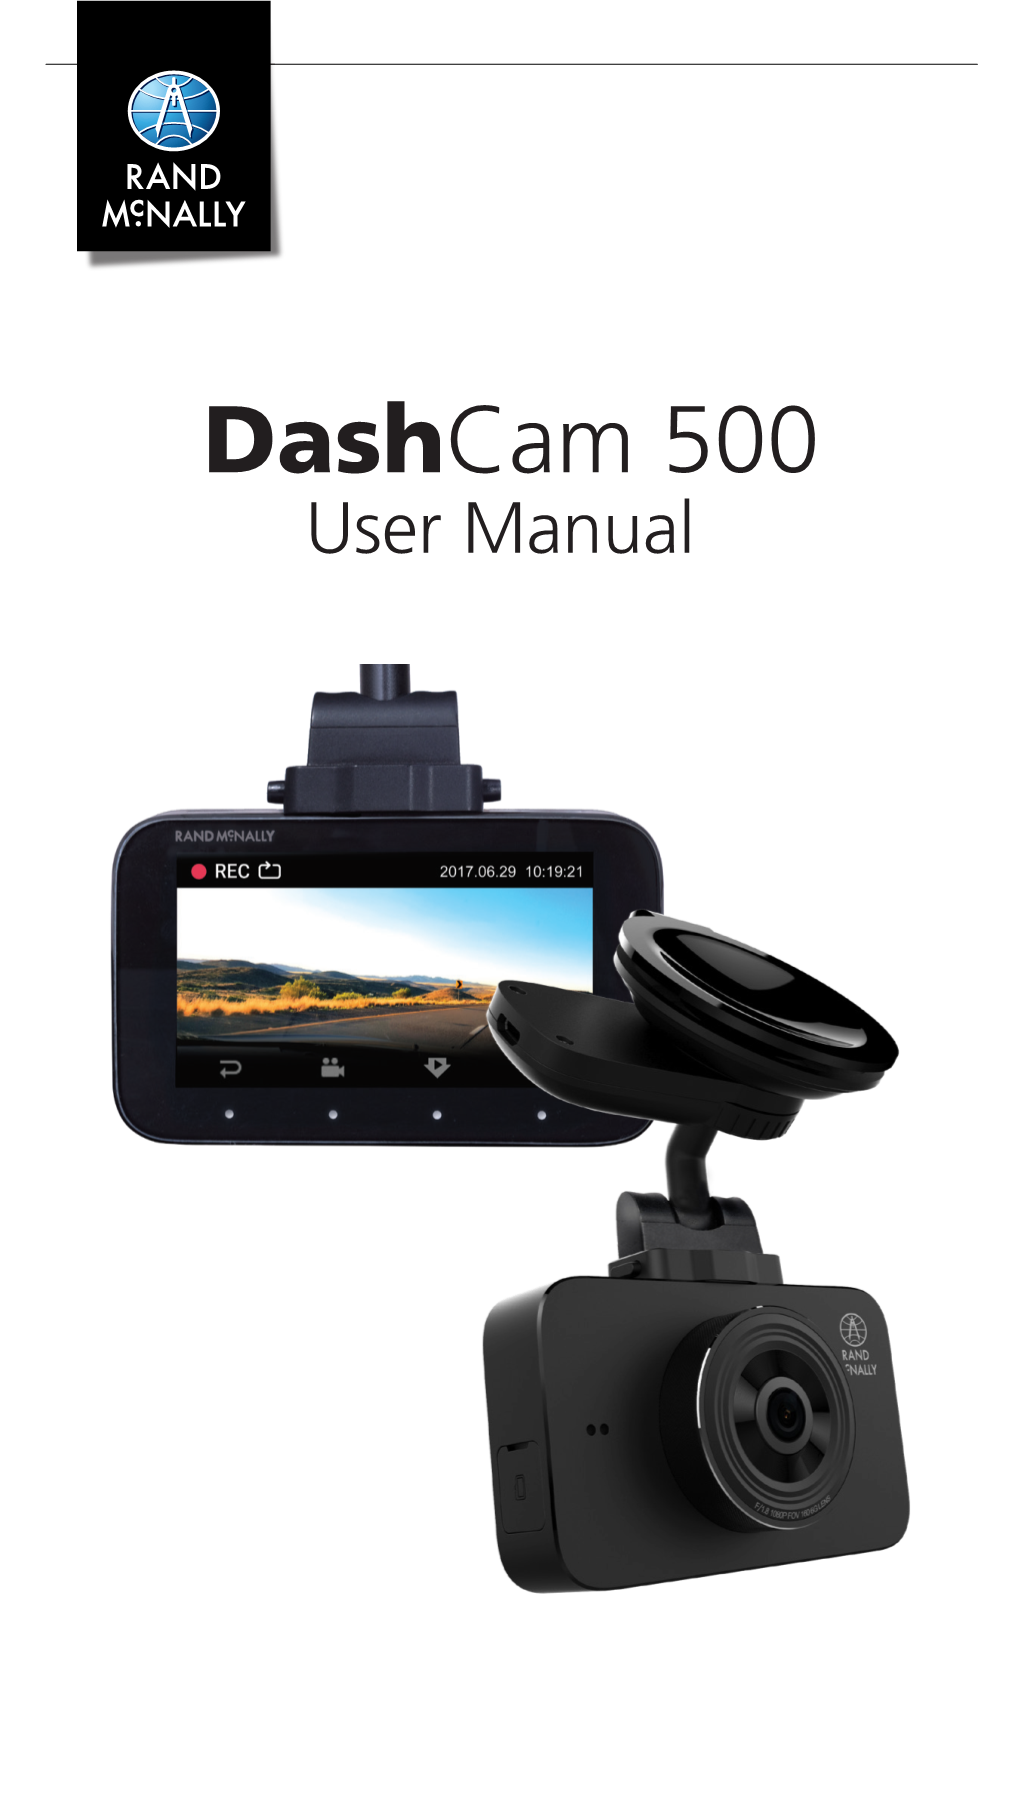 Dashcam 500 User Manual Contents